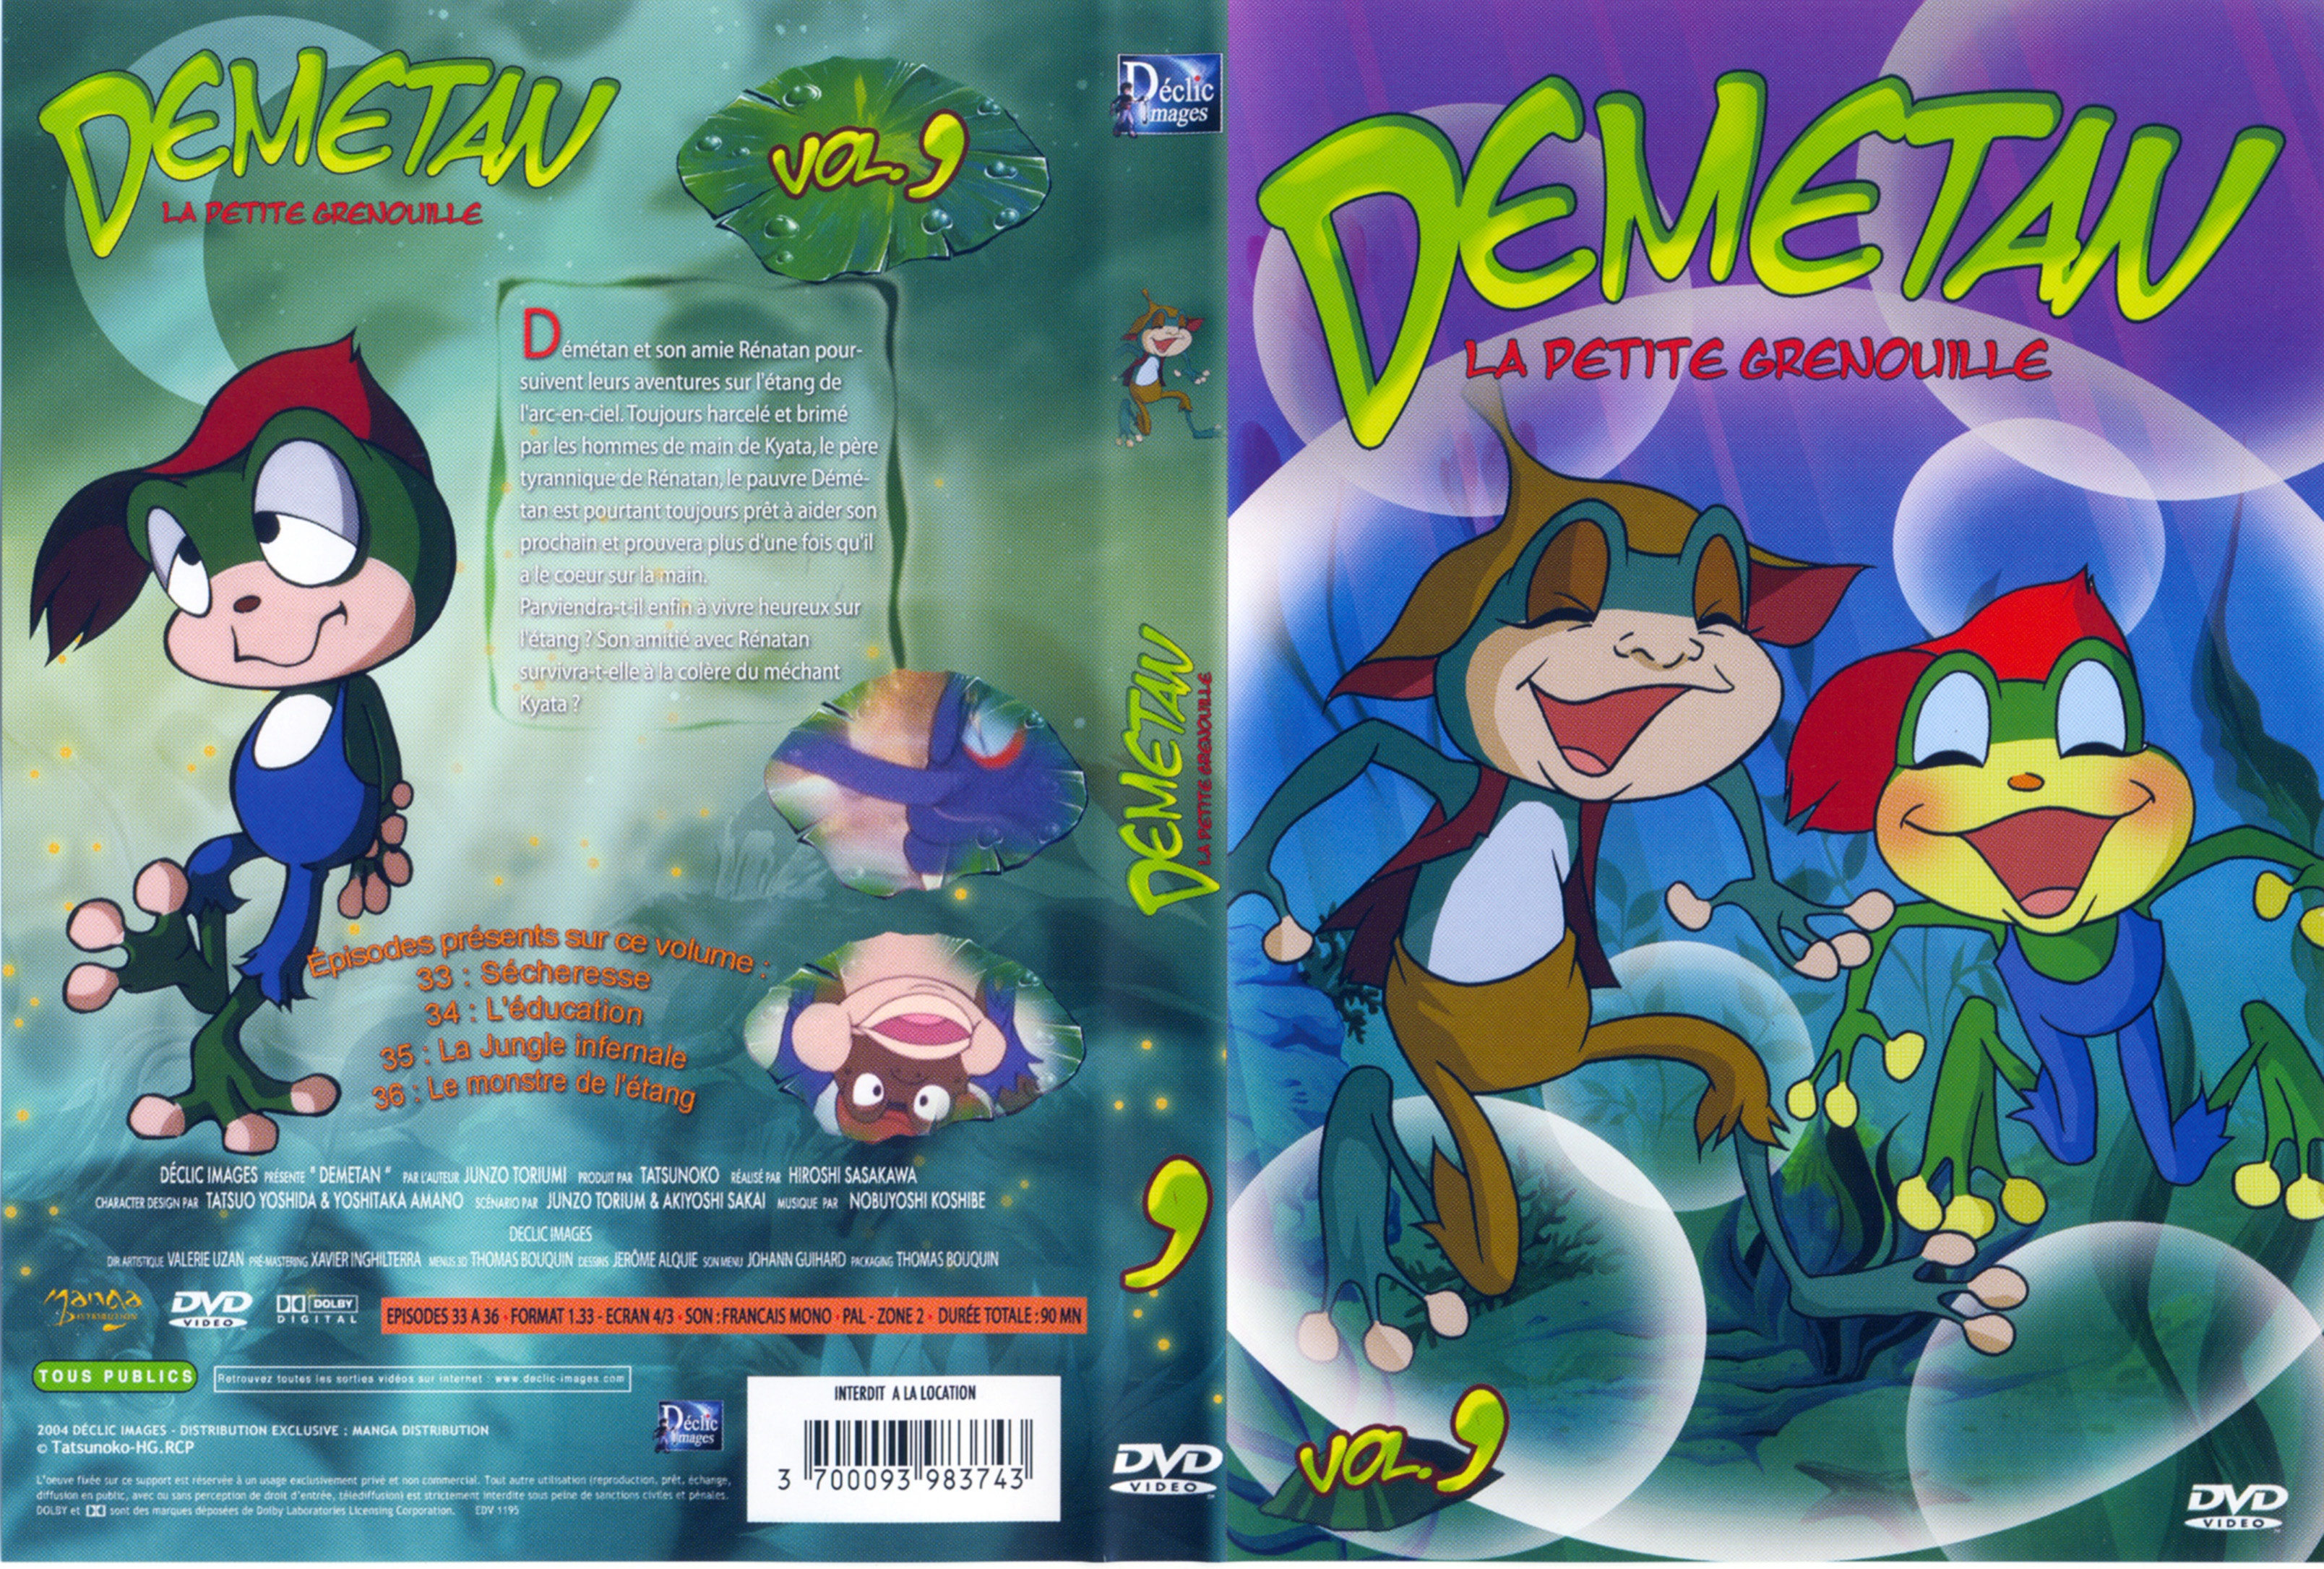 Jaquette DVD Demetan DVD 09